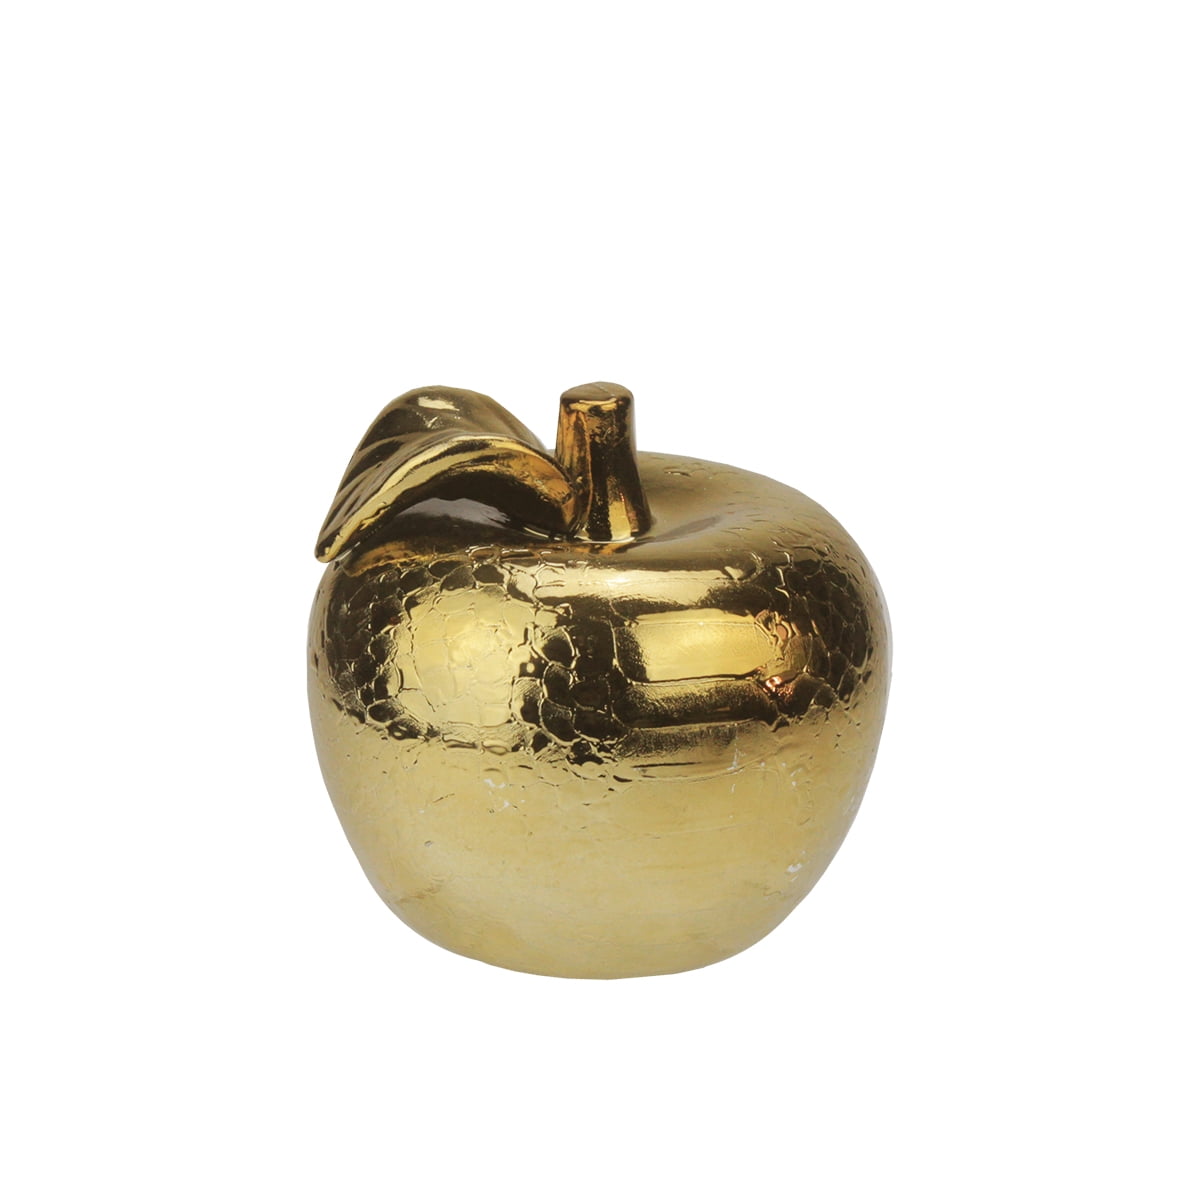 Ceramic Apple sculpture - Golden Décor Ornament - Market99